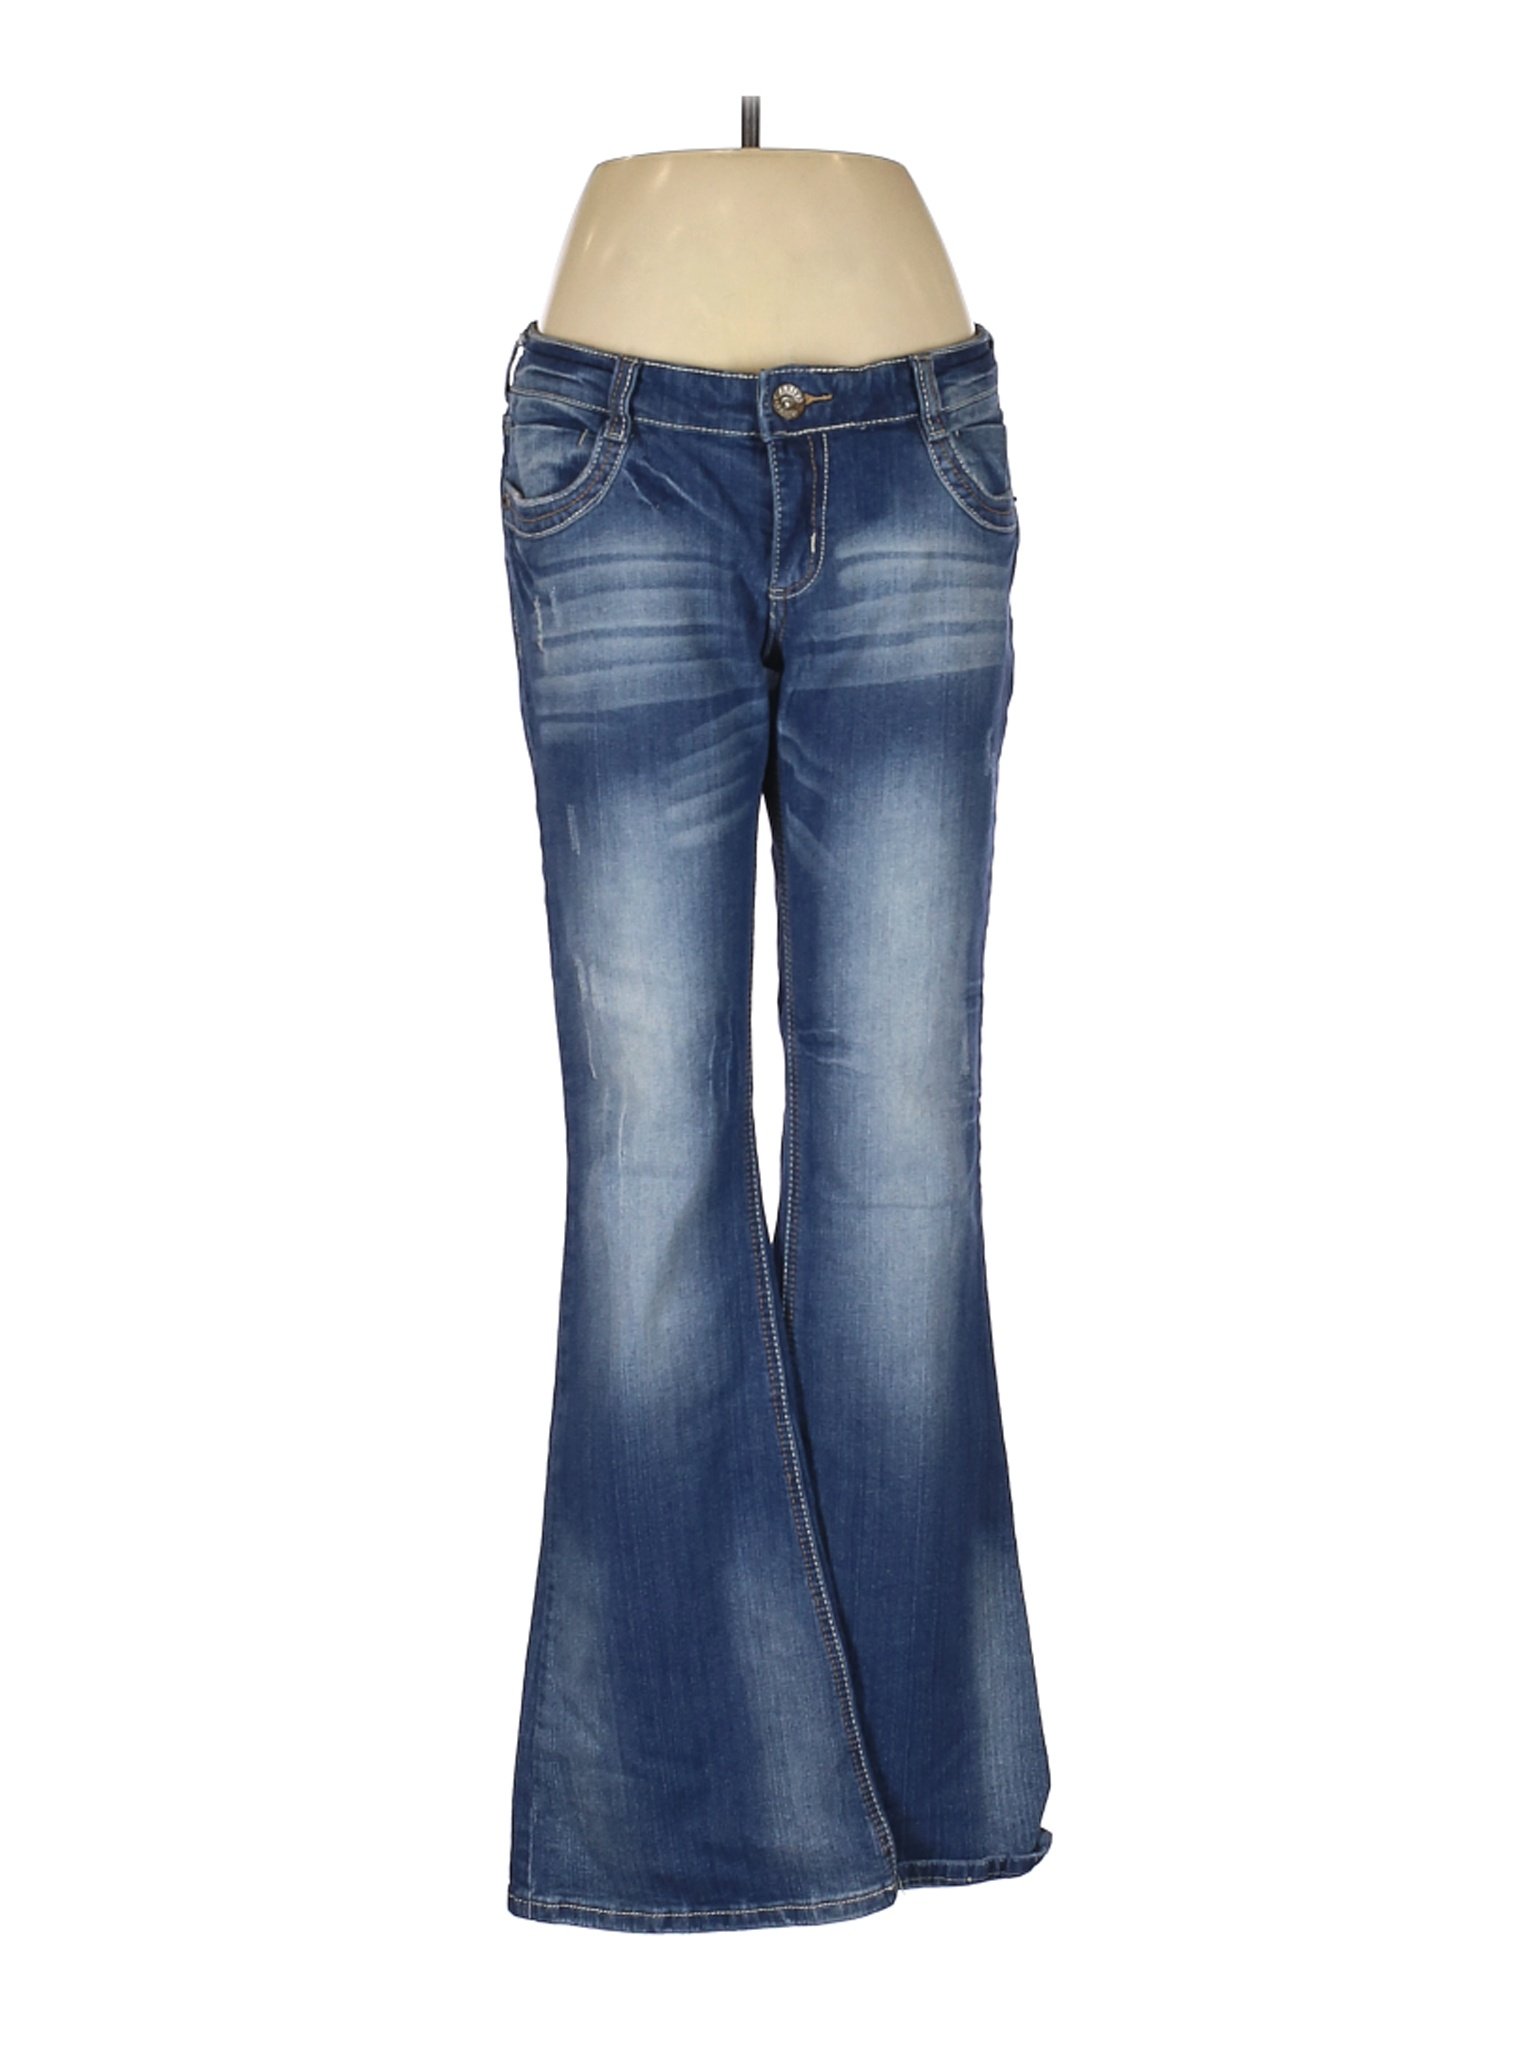 Ariya Jeans Women Blue Jeans 11 | eBay